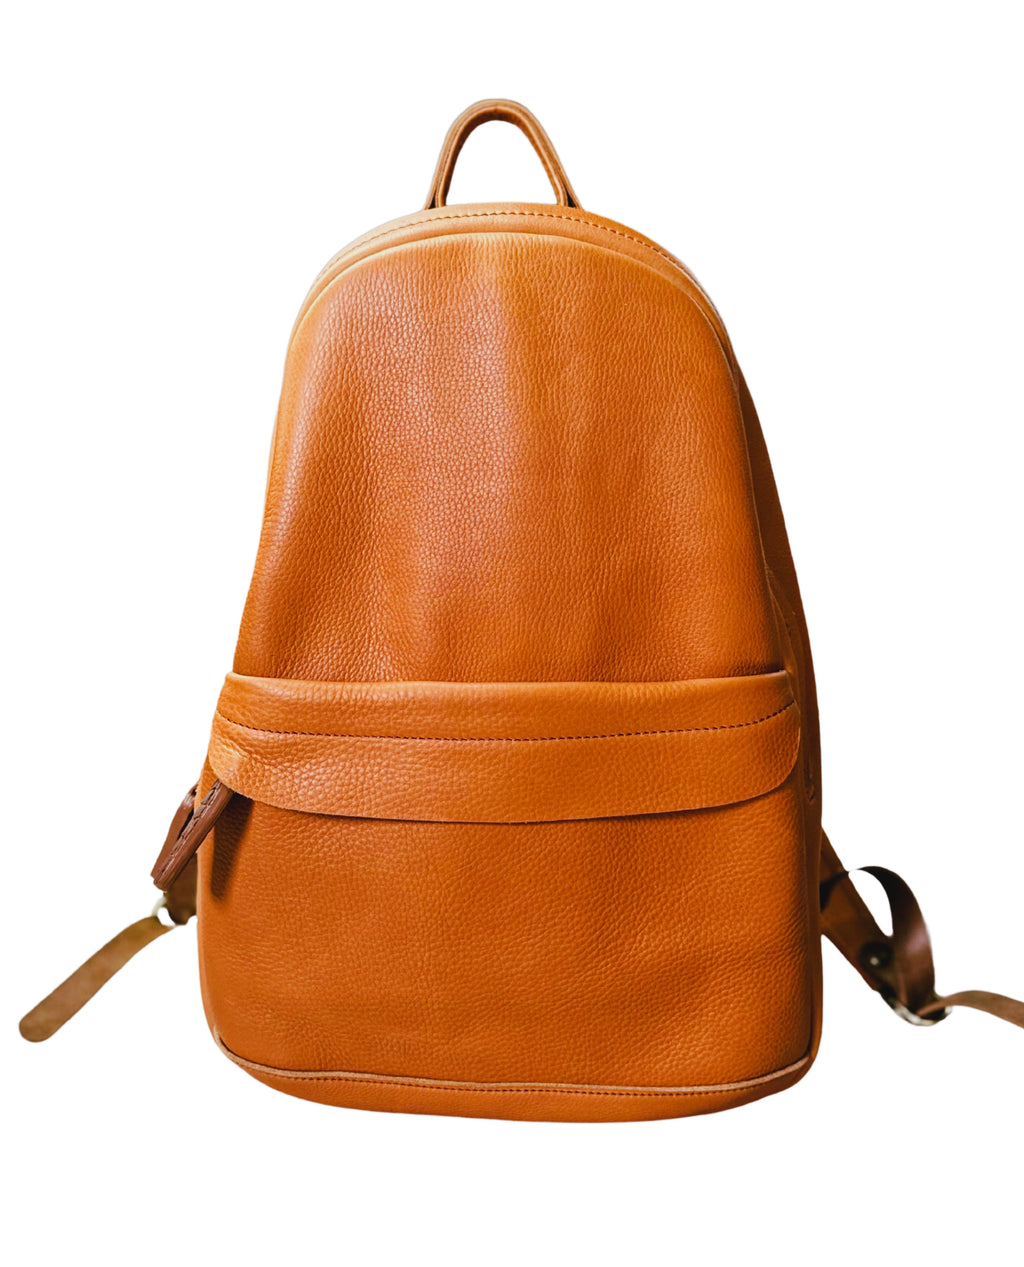 Backpack - butterscotch